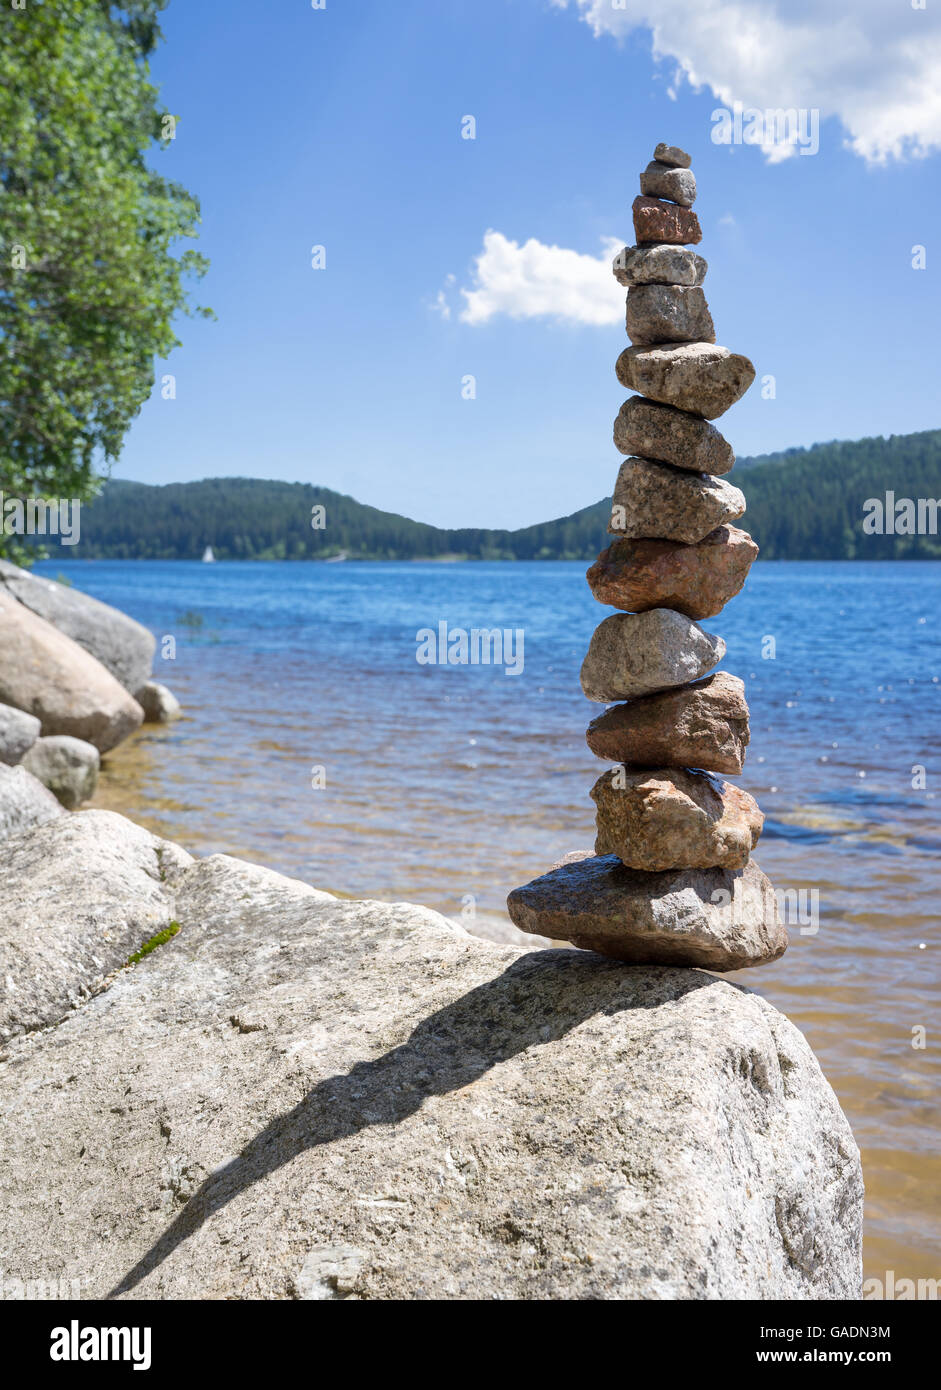 Rock balancing at a lake Stock Photo